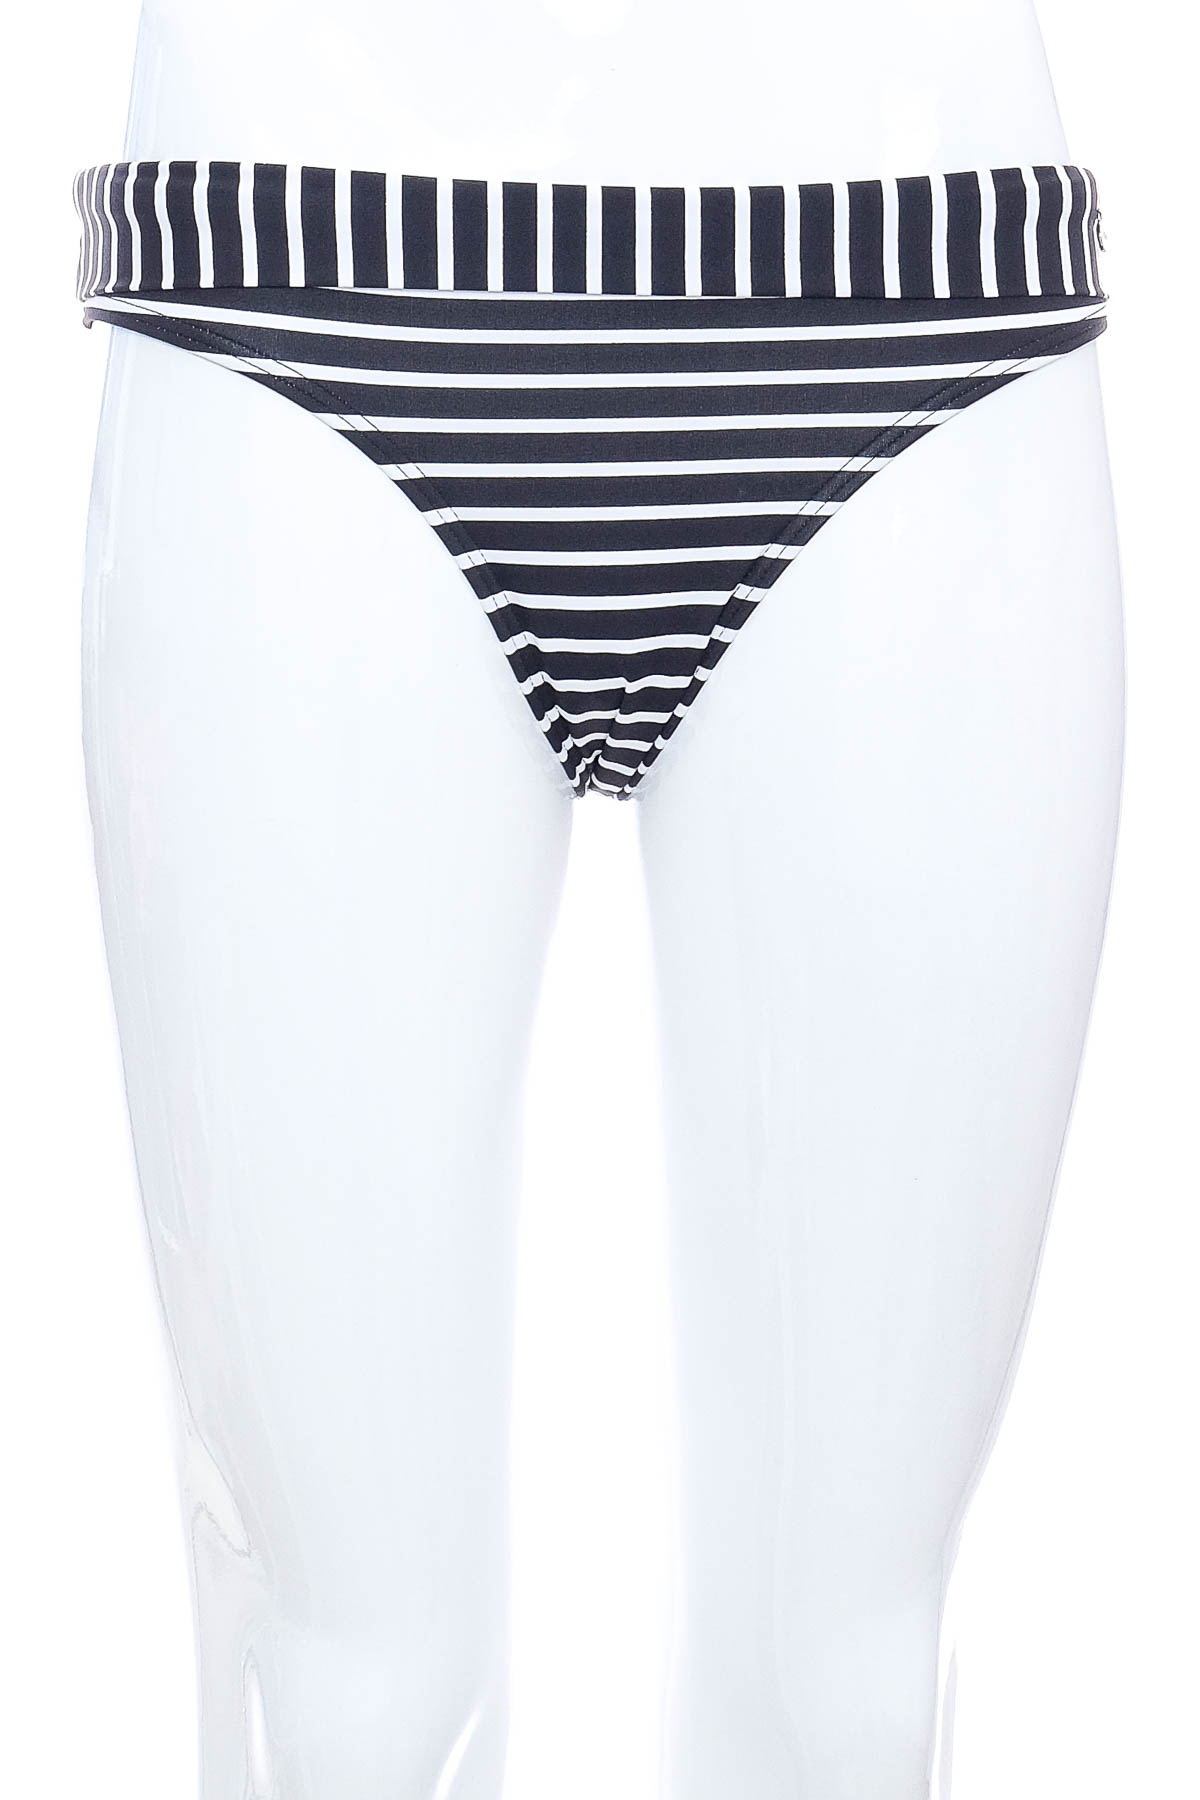 Women's swimsuit bottoms - S.Oliver - 0